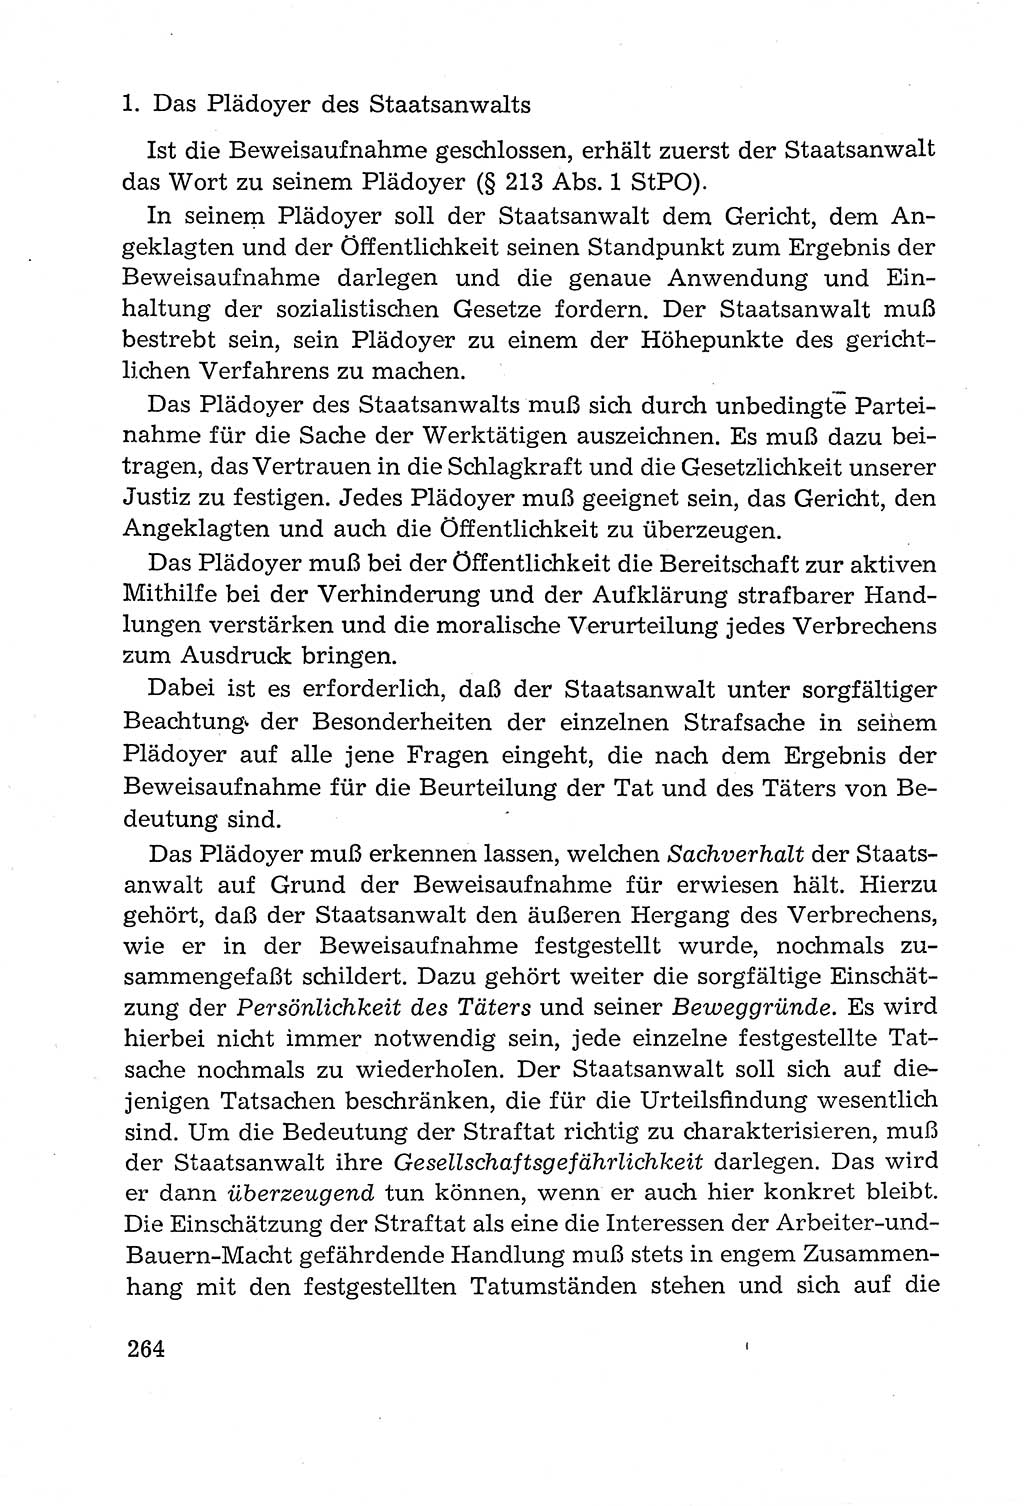 Leitfaden des Strafprozeßrechts der Deutschen Demokratischen Republik (DDR) 1959, Seite 264 (LF StPR DDR 1959, S. 264)